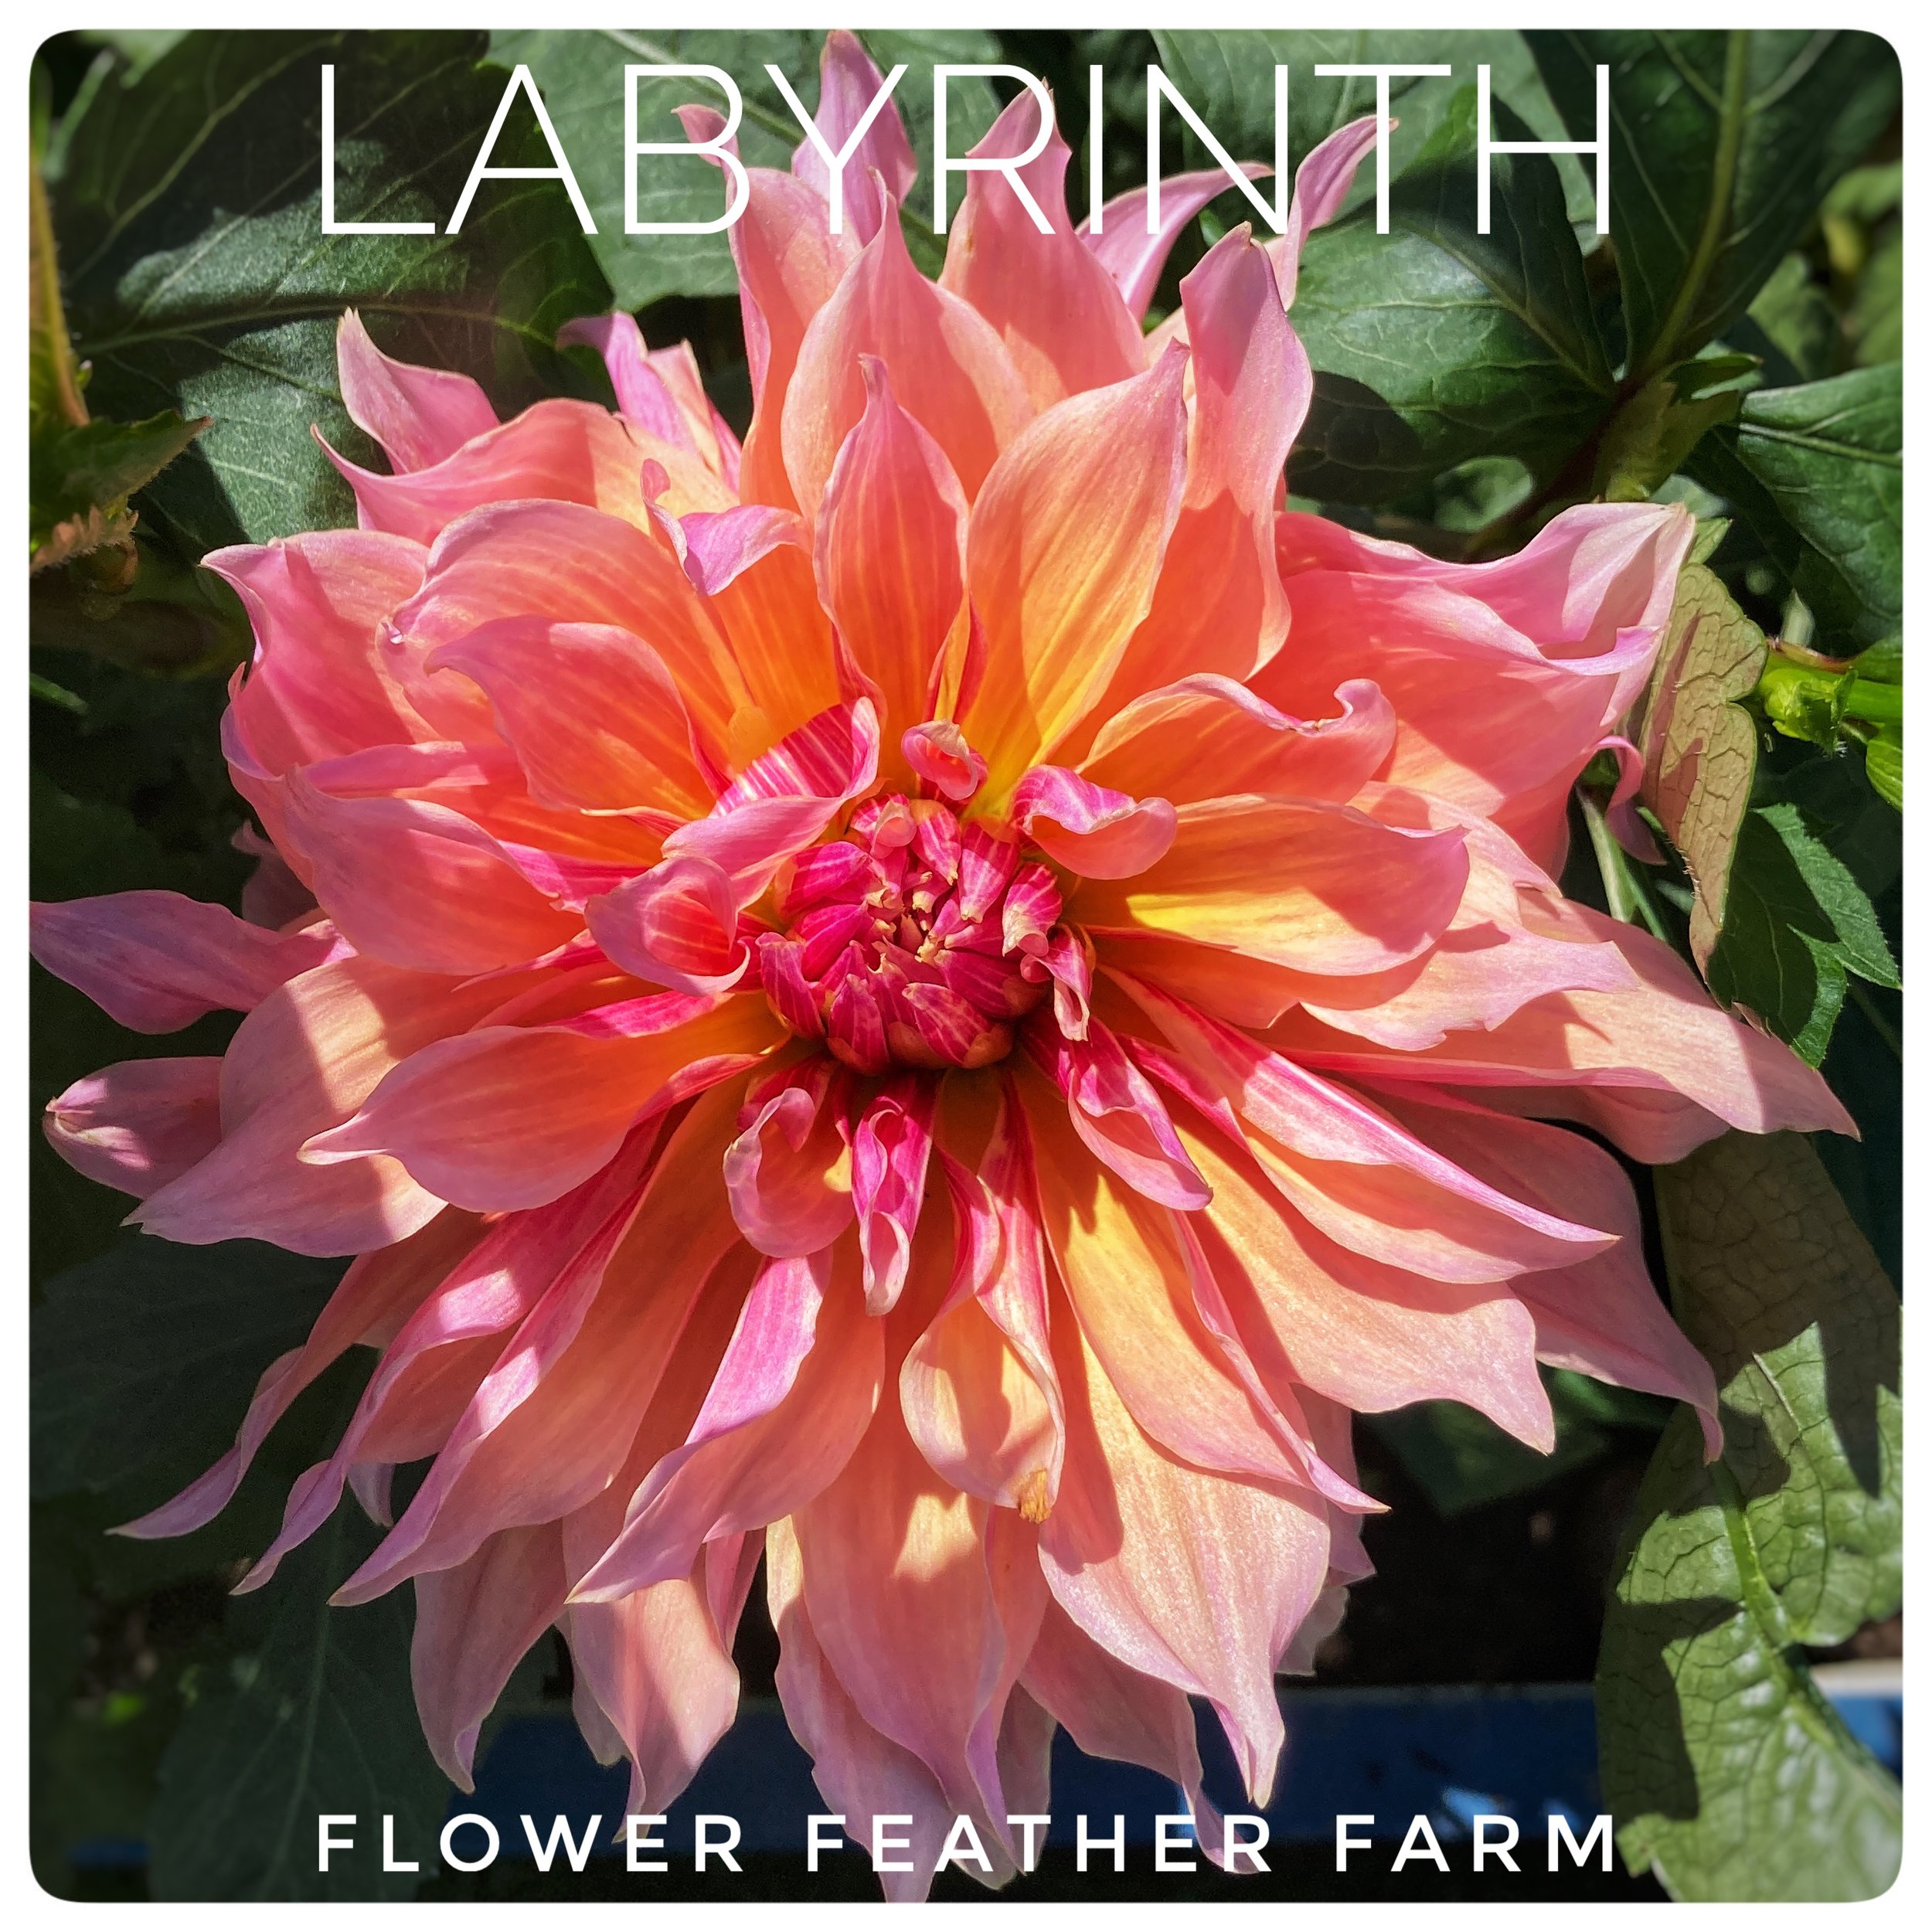 Labyrinth Dahlia at Flower Feather Farm, a dahlia farm